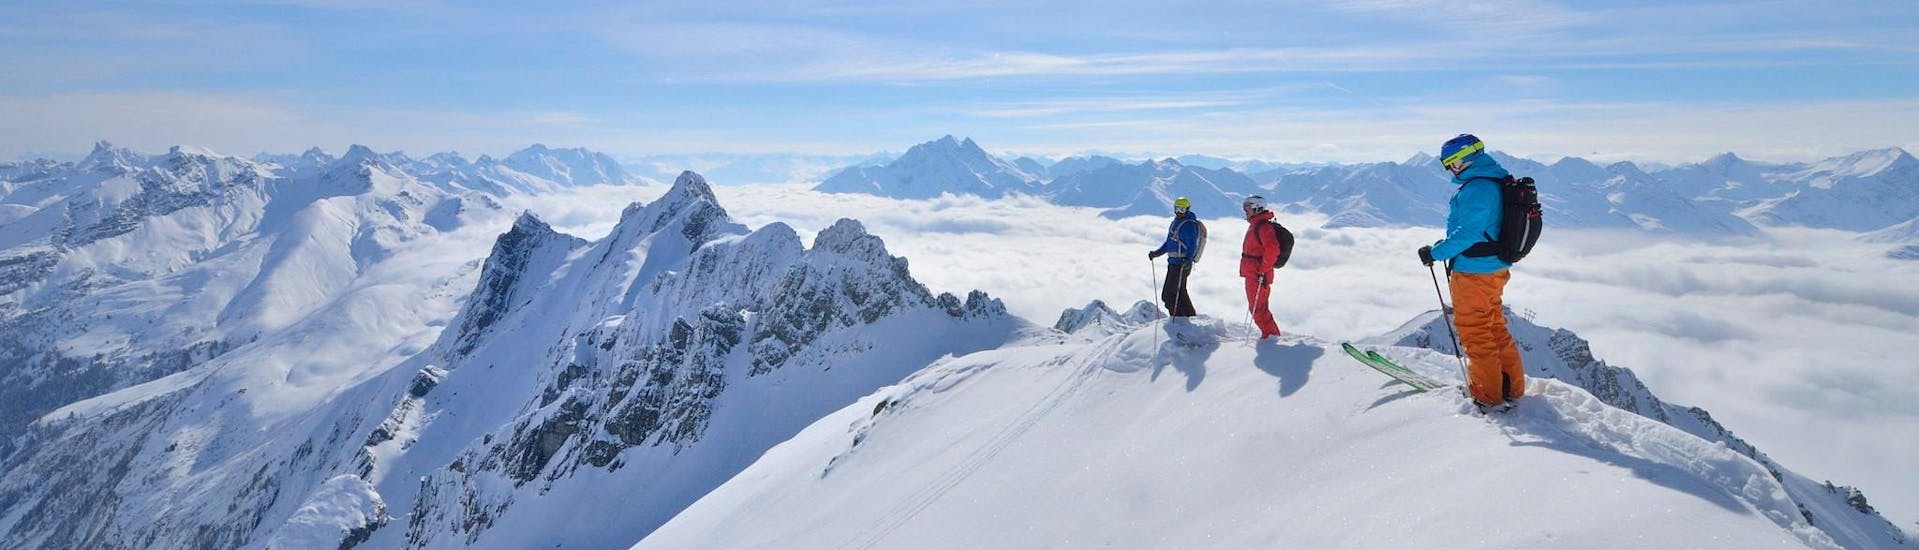 Lawine & Veiligheidstraining voor alle niveaus: Drie skiërs staan op een besneeuwde bergkam tijdens een cursus die is georganiseerd door Freeride Hotspot.